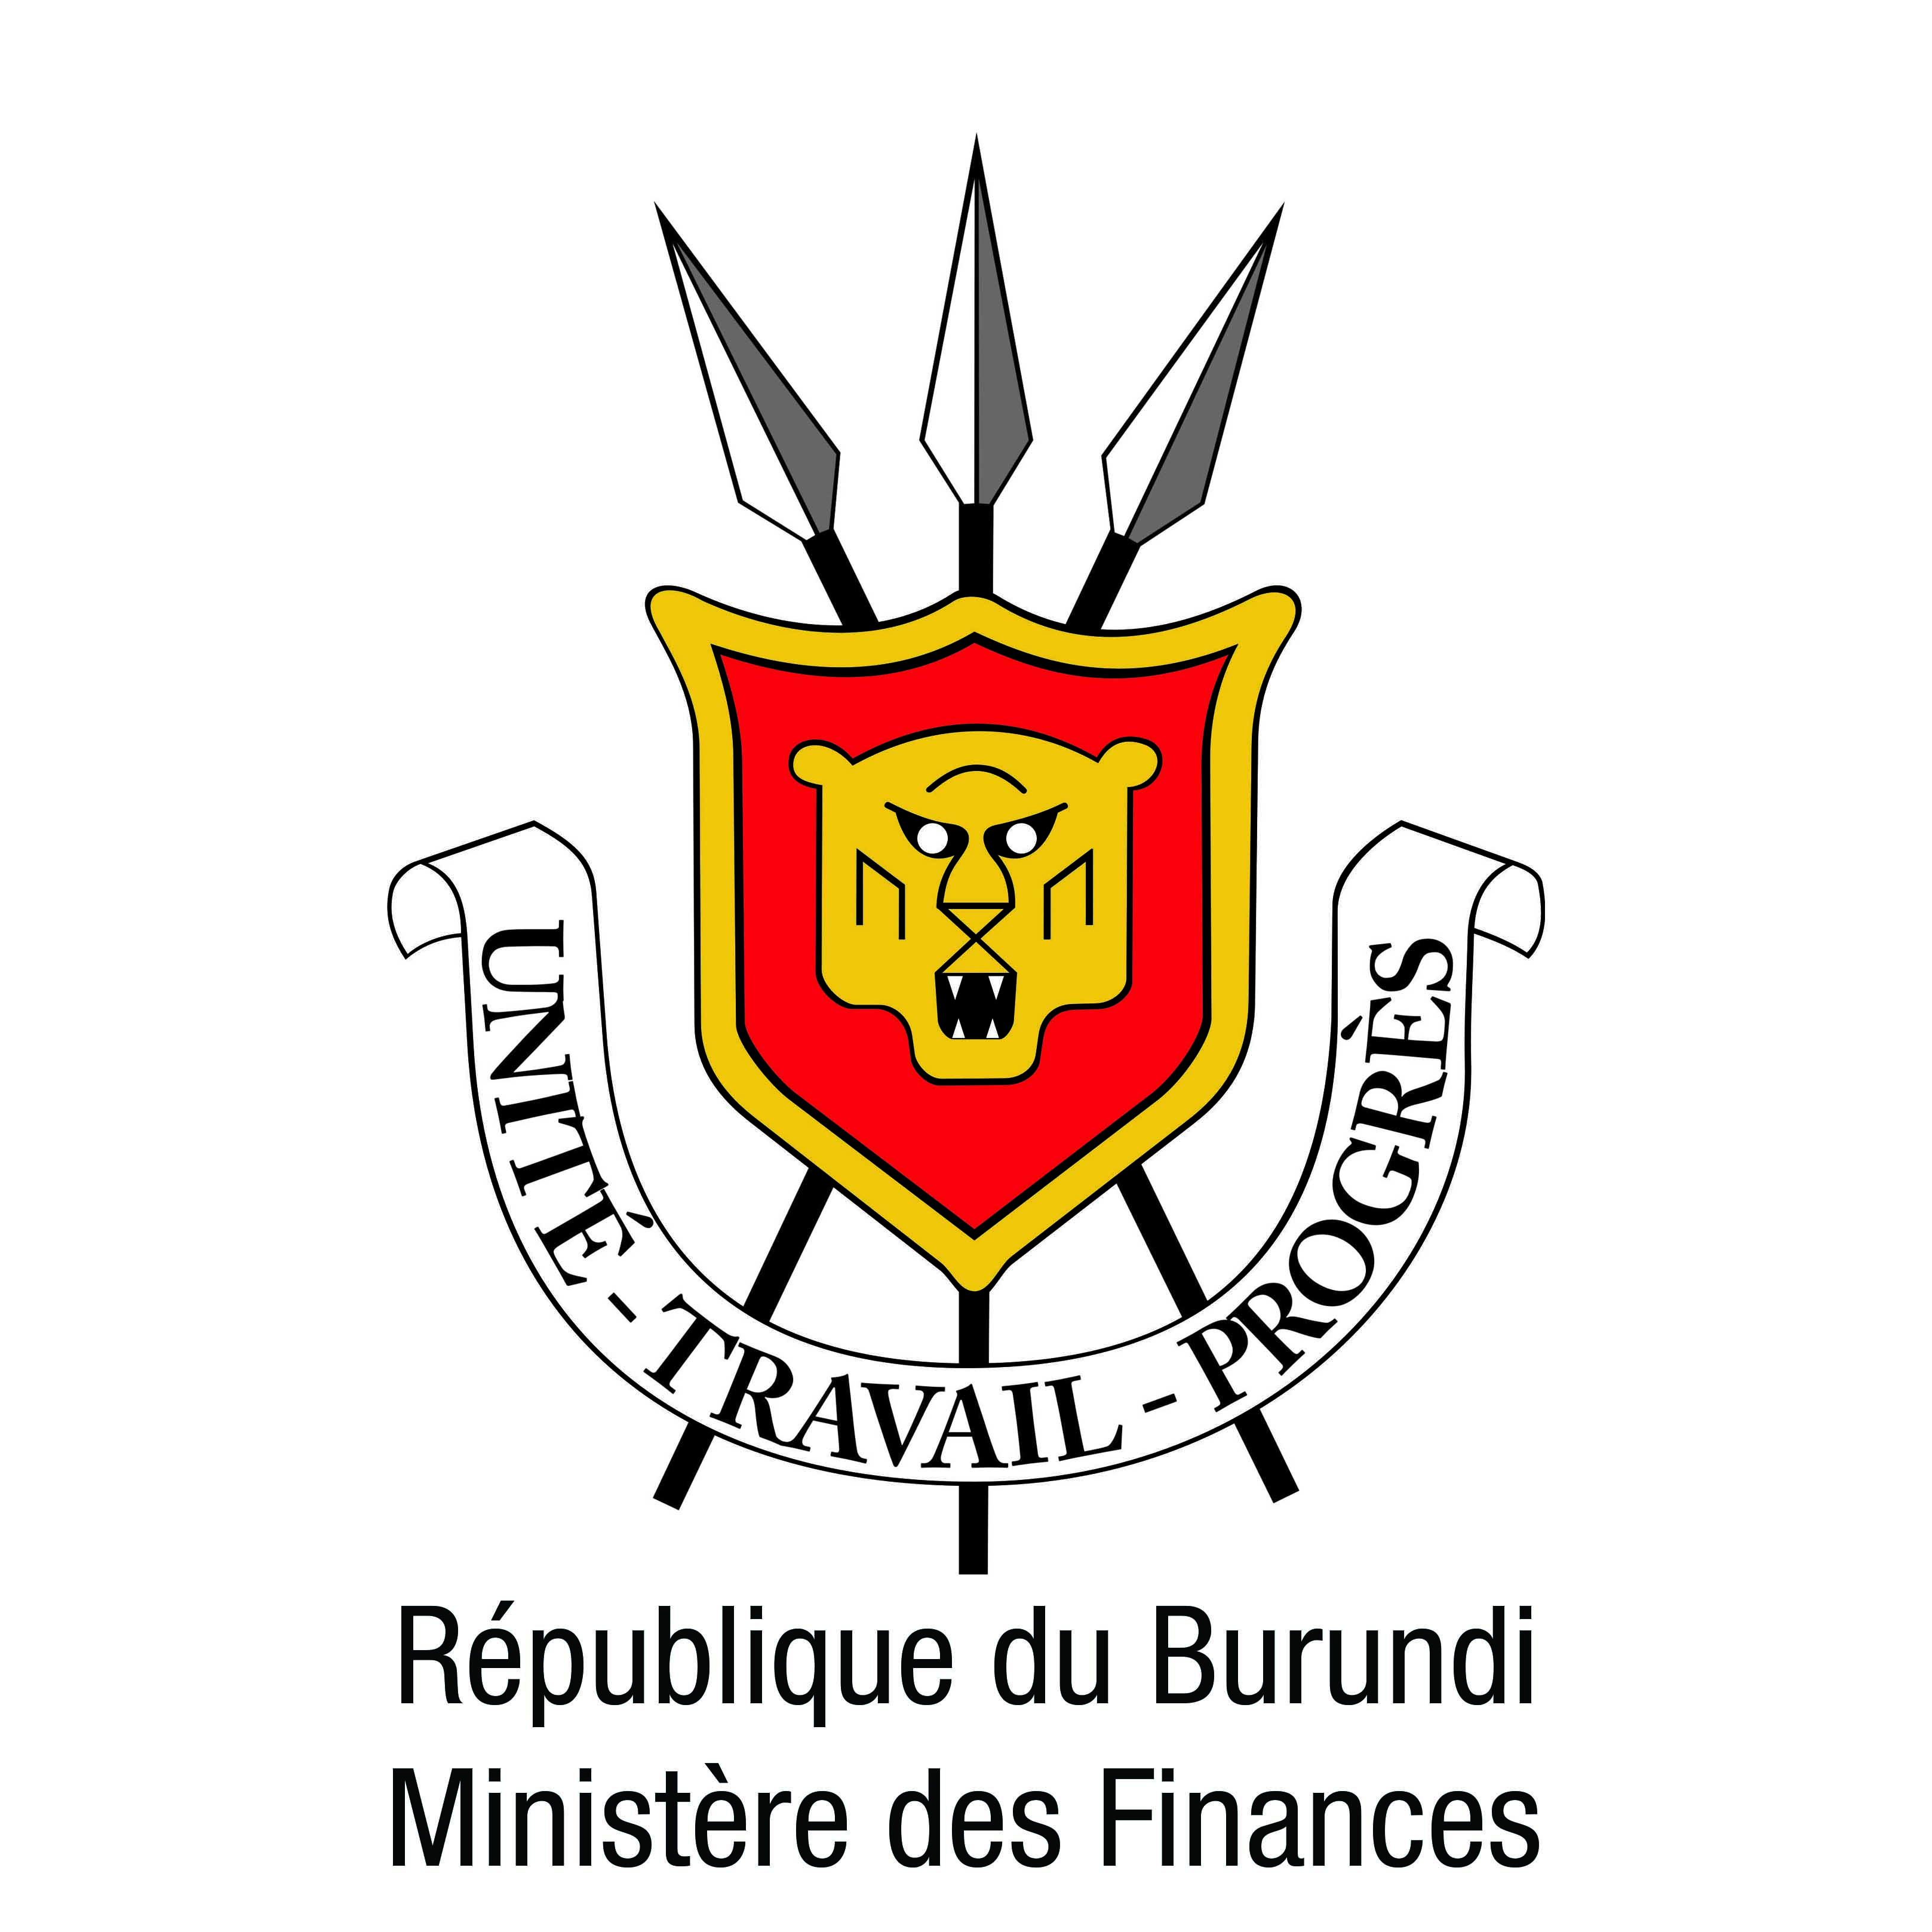 Ministere des finances